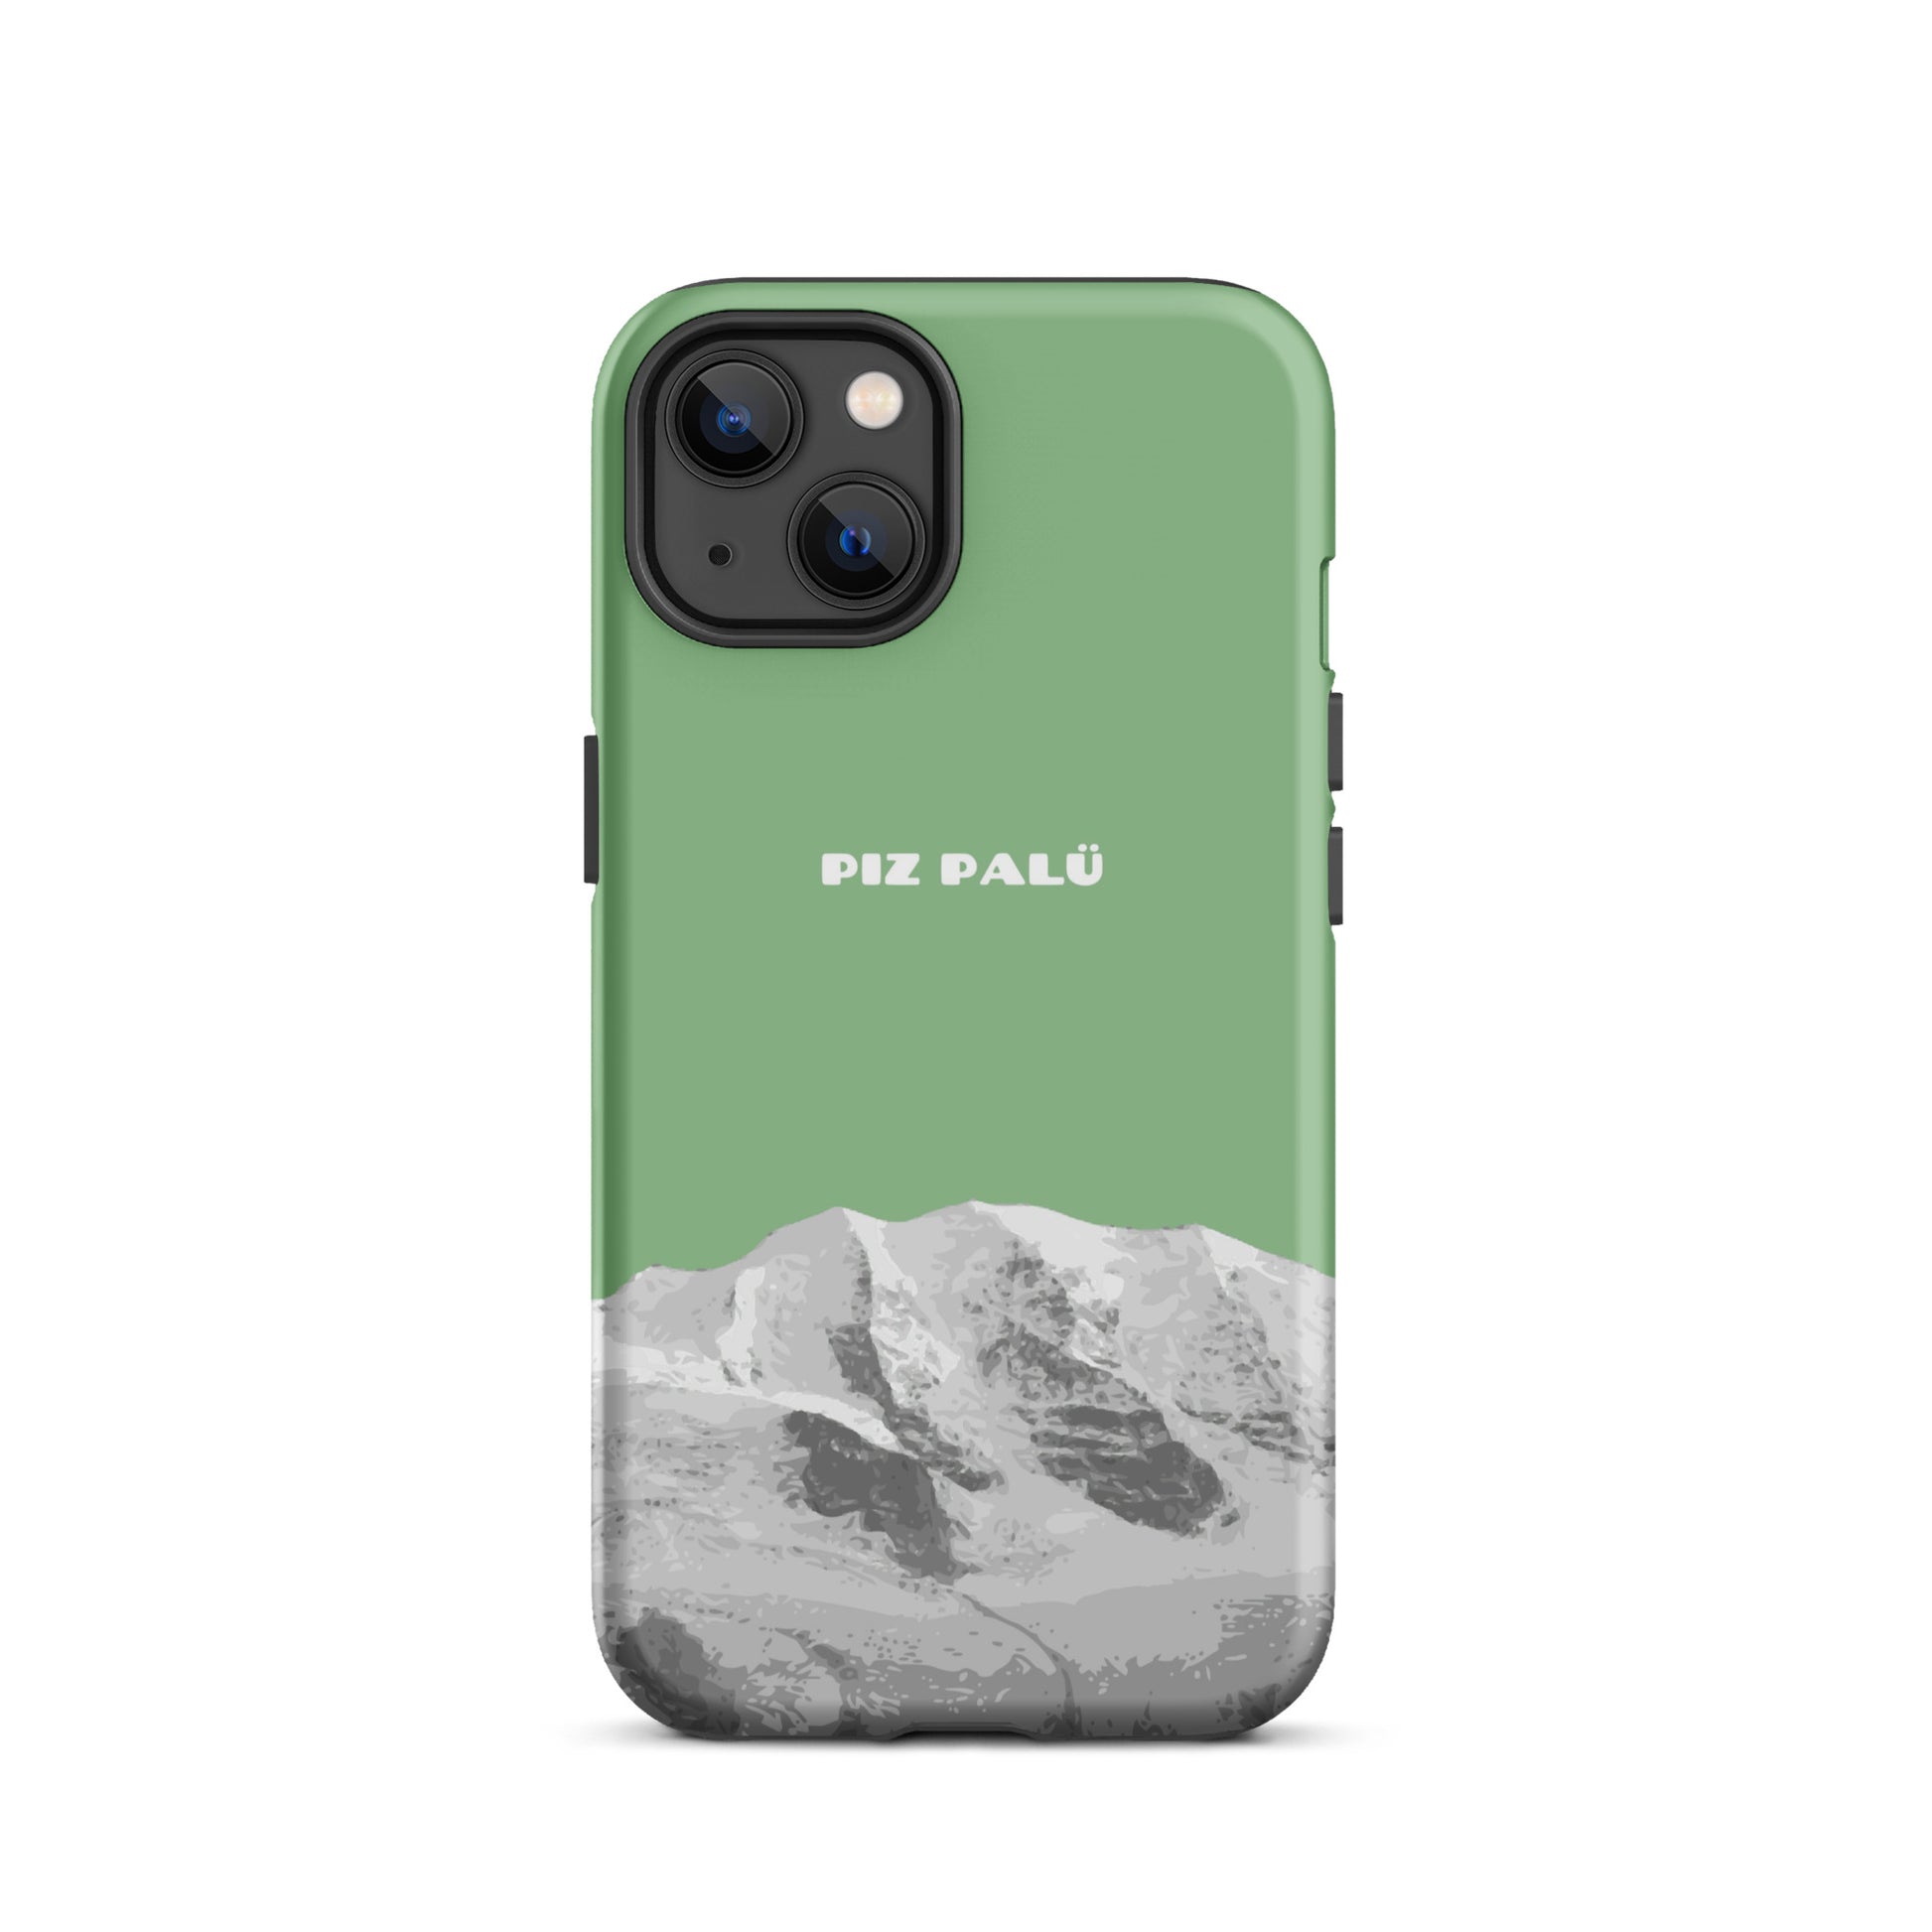 Hülle für das iPhone 13 von Apple in der Farbe Hellgrün, dass den Piz Palü in Graubünden zeigt.